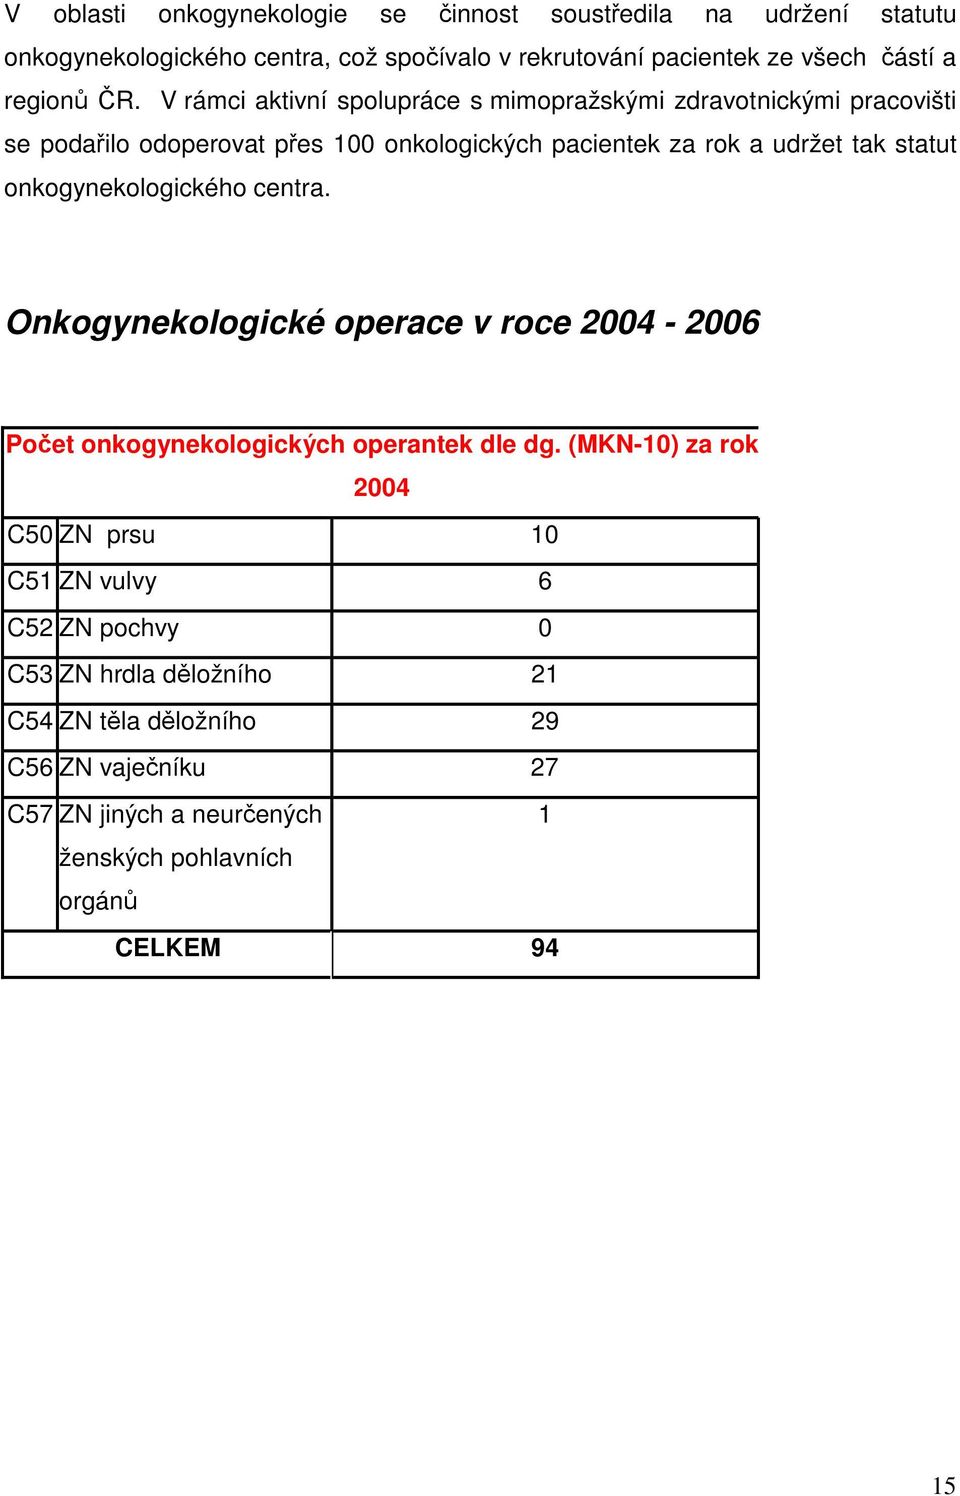 onkogynekologického centra. Onkogynekologické operace v roce 2004-2006 Poet onkogynekologických operantek dle dg.